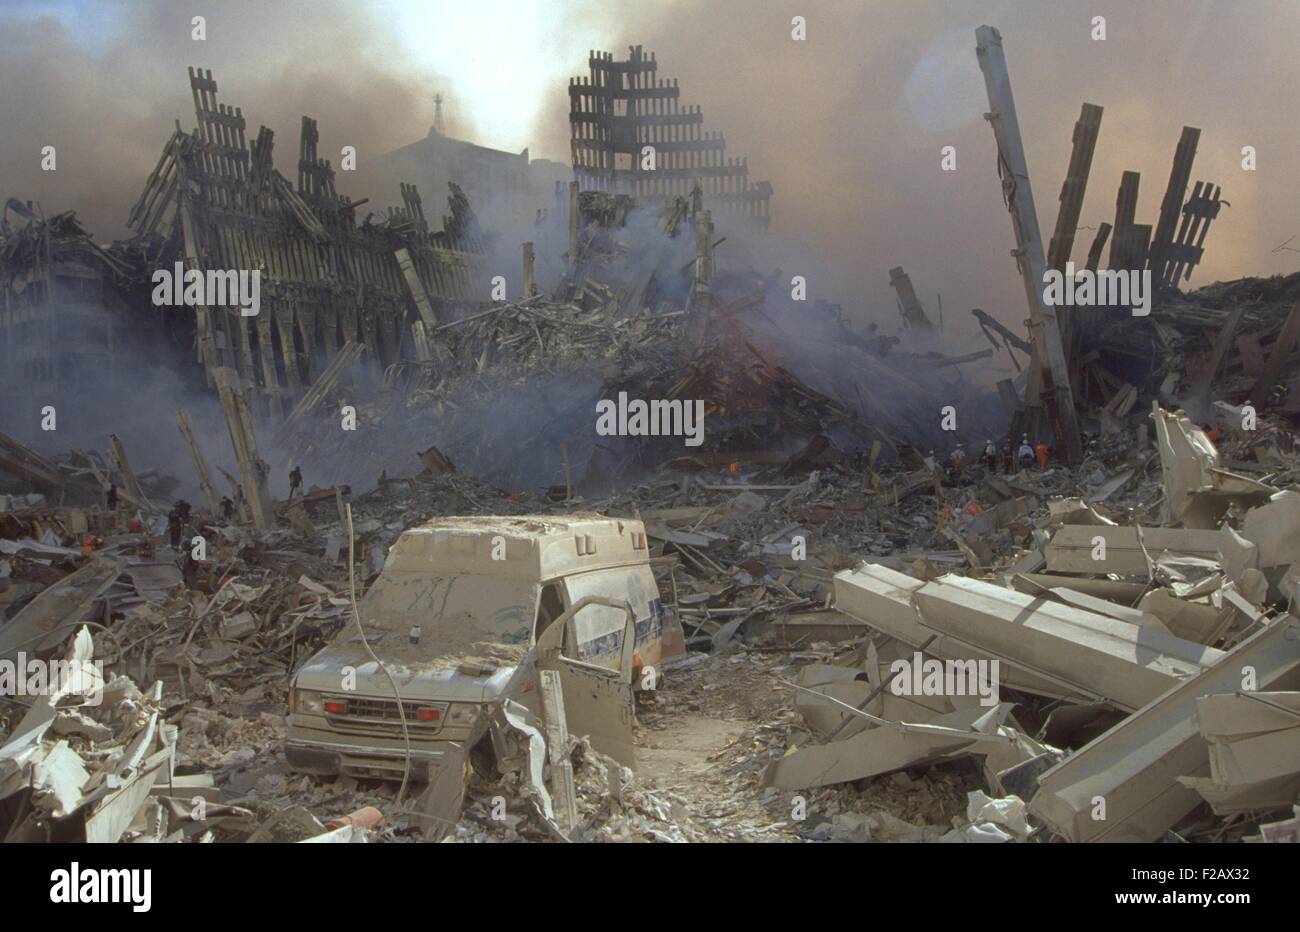 Un couvertes de poussière dans les restes du World Trade Center le 13 septembre 2001. Les travailleurs d'urgence dans l'arrière-plan sont véhiculer l'ampleur de la ruine. La ville de New York, après des attaques terroristes du 11 septembre 2001. (BSLOC_2015_2_66) Banque D'Images